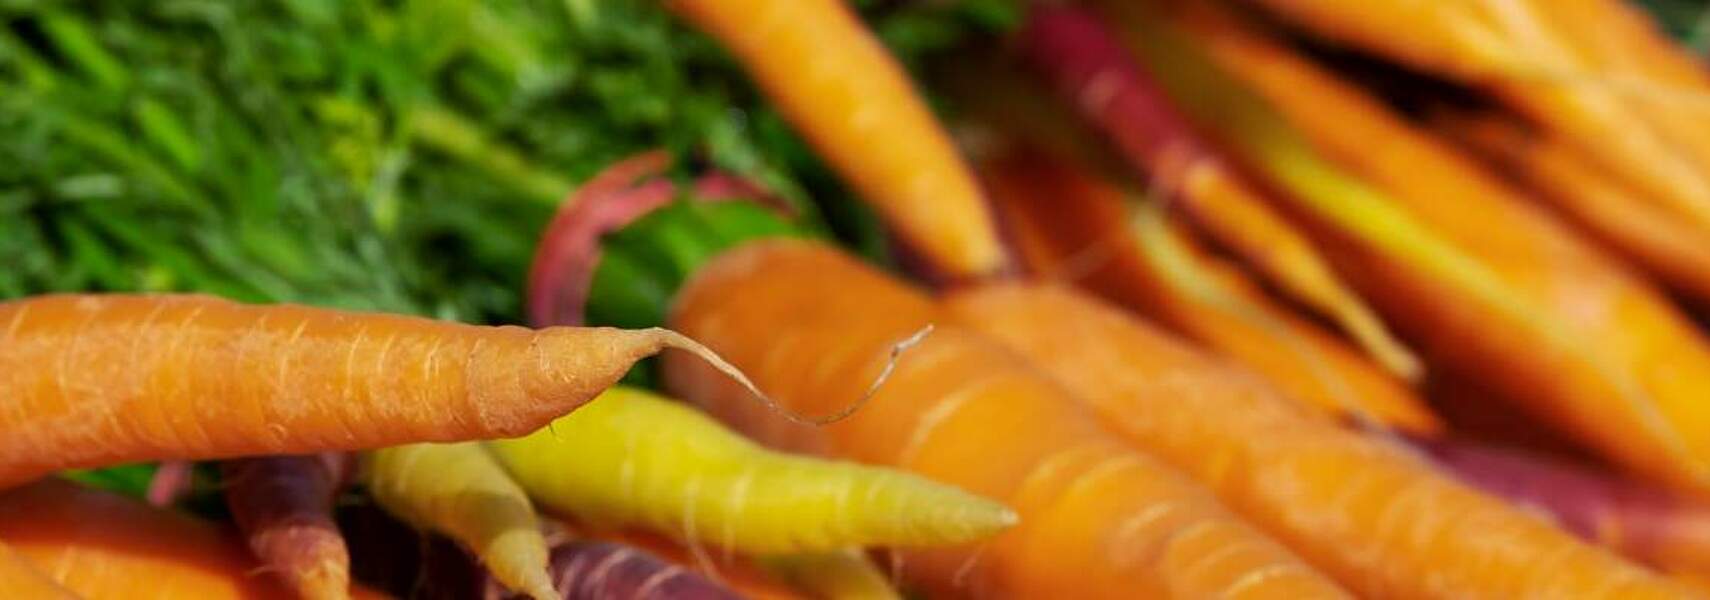 Vermarktungsnormen für Obst und Gemüse: Nützlich für Verbraucher und Handel